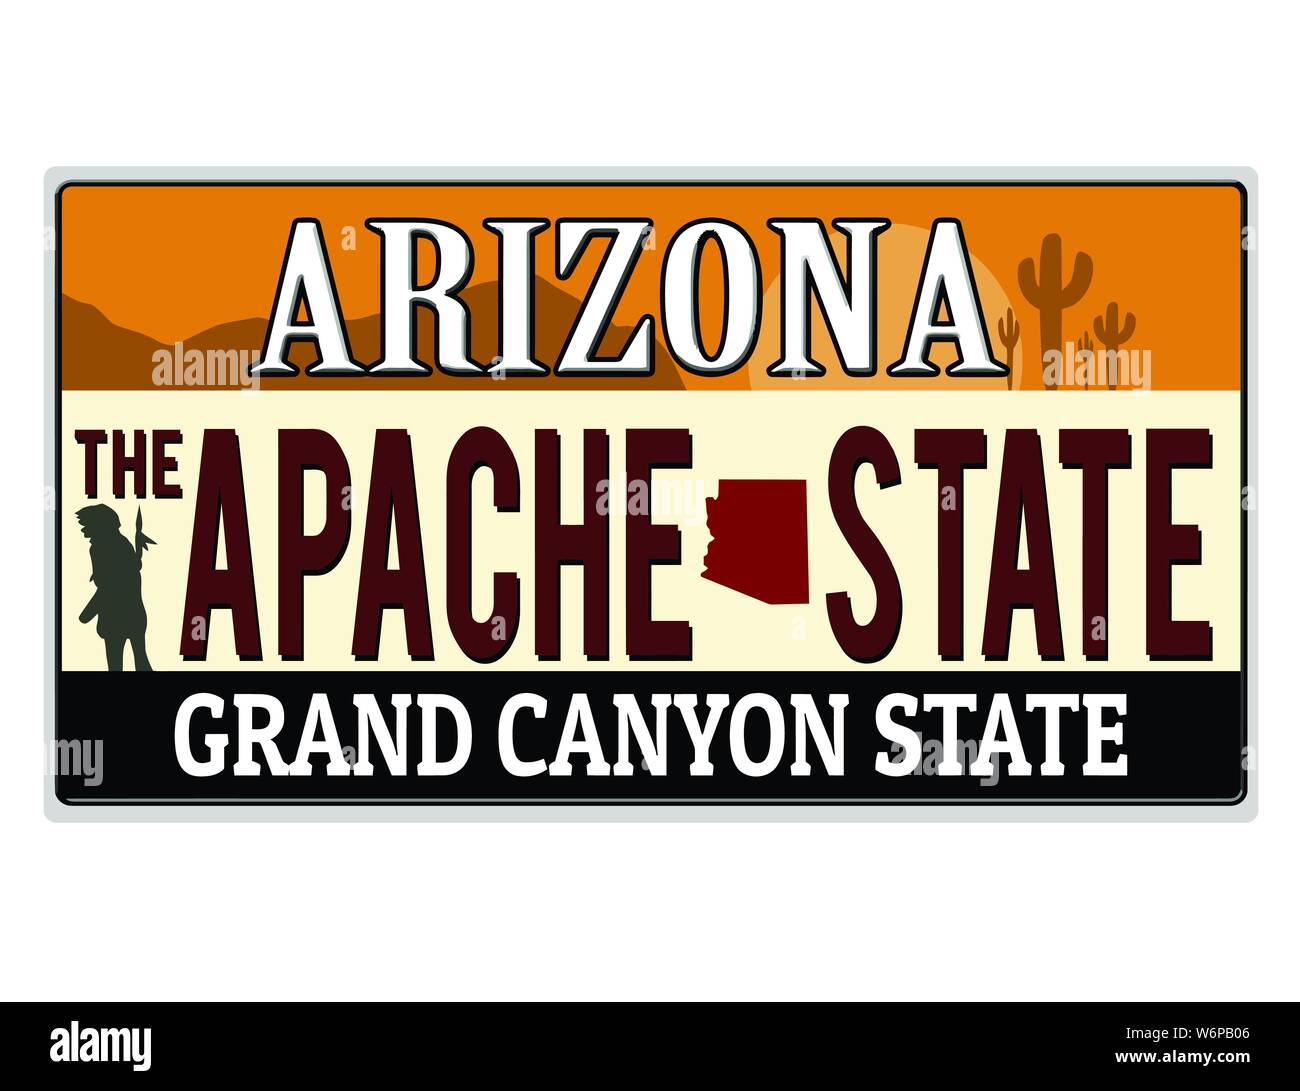 Una imitazione Arizona targa con testo apache stato scritto su di esso la realizzazione di un grande progetto. Parole sul fondo del Grand Canyon membro Illustrazione Vettoriale